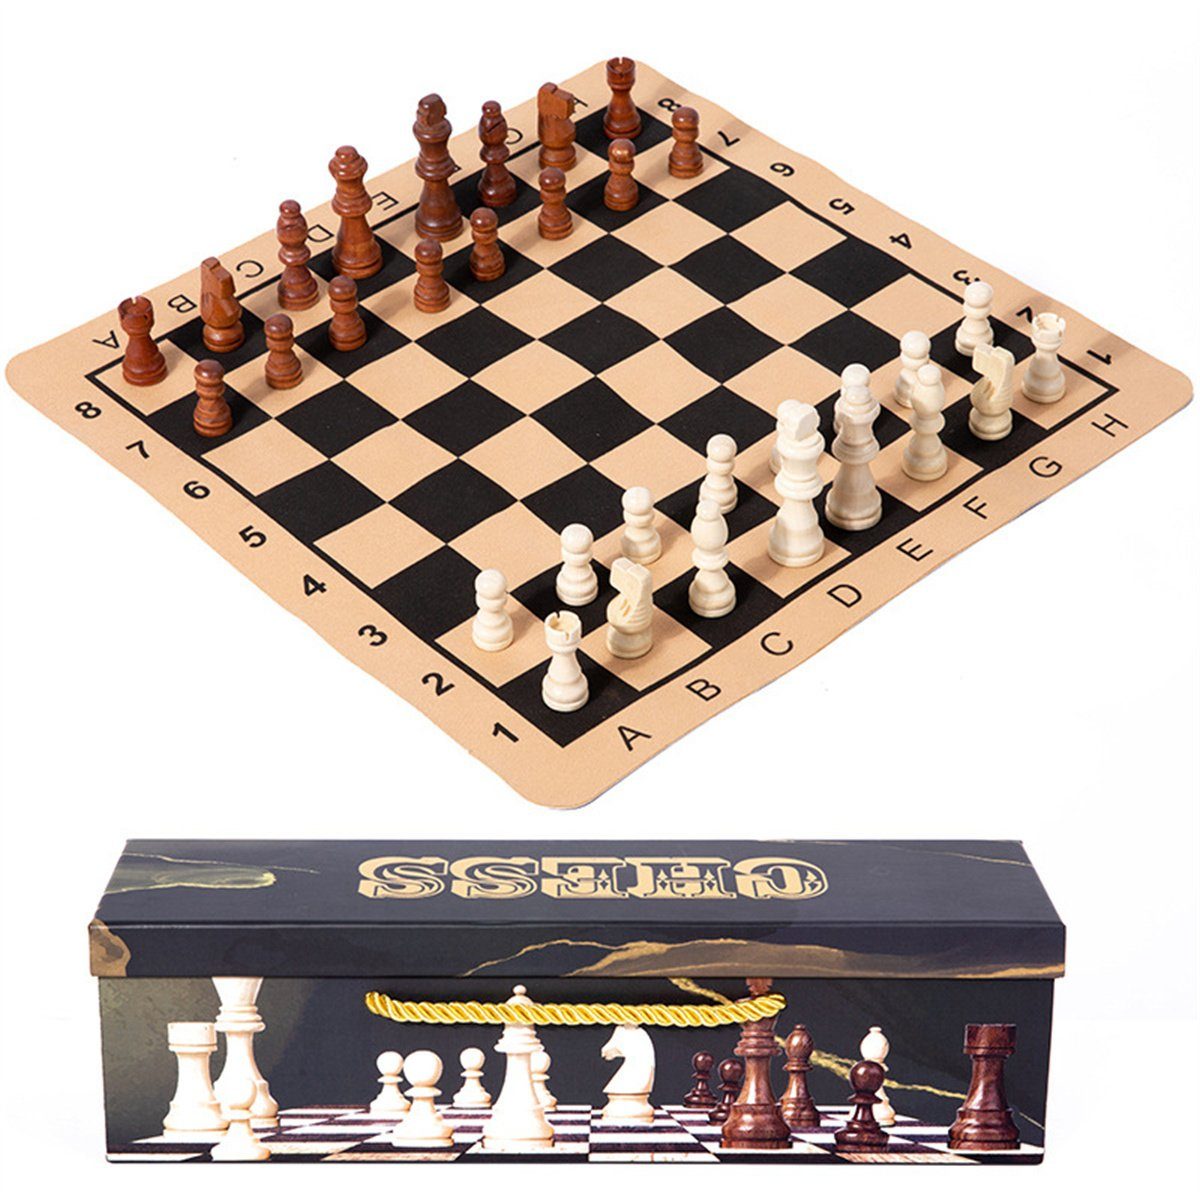 Idena - 2-in-1 Spiel Schach & Dame online kaufen » Zum Shop